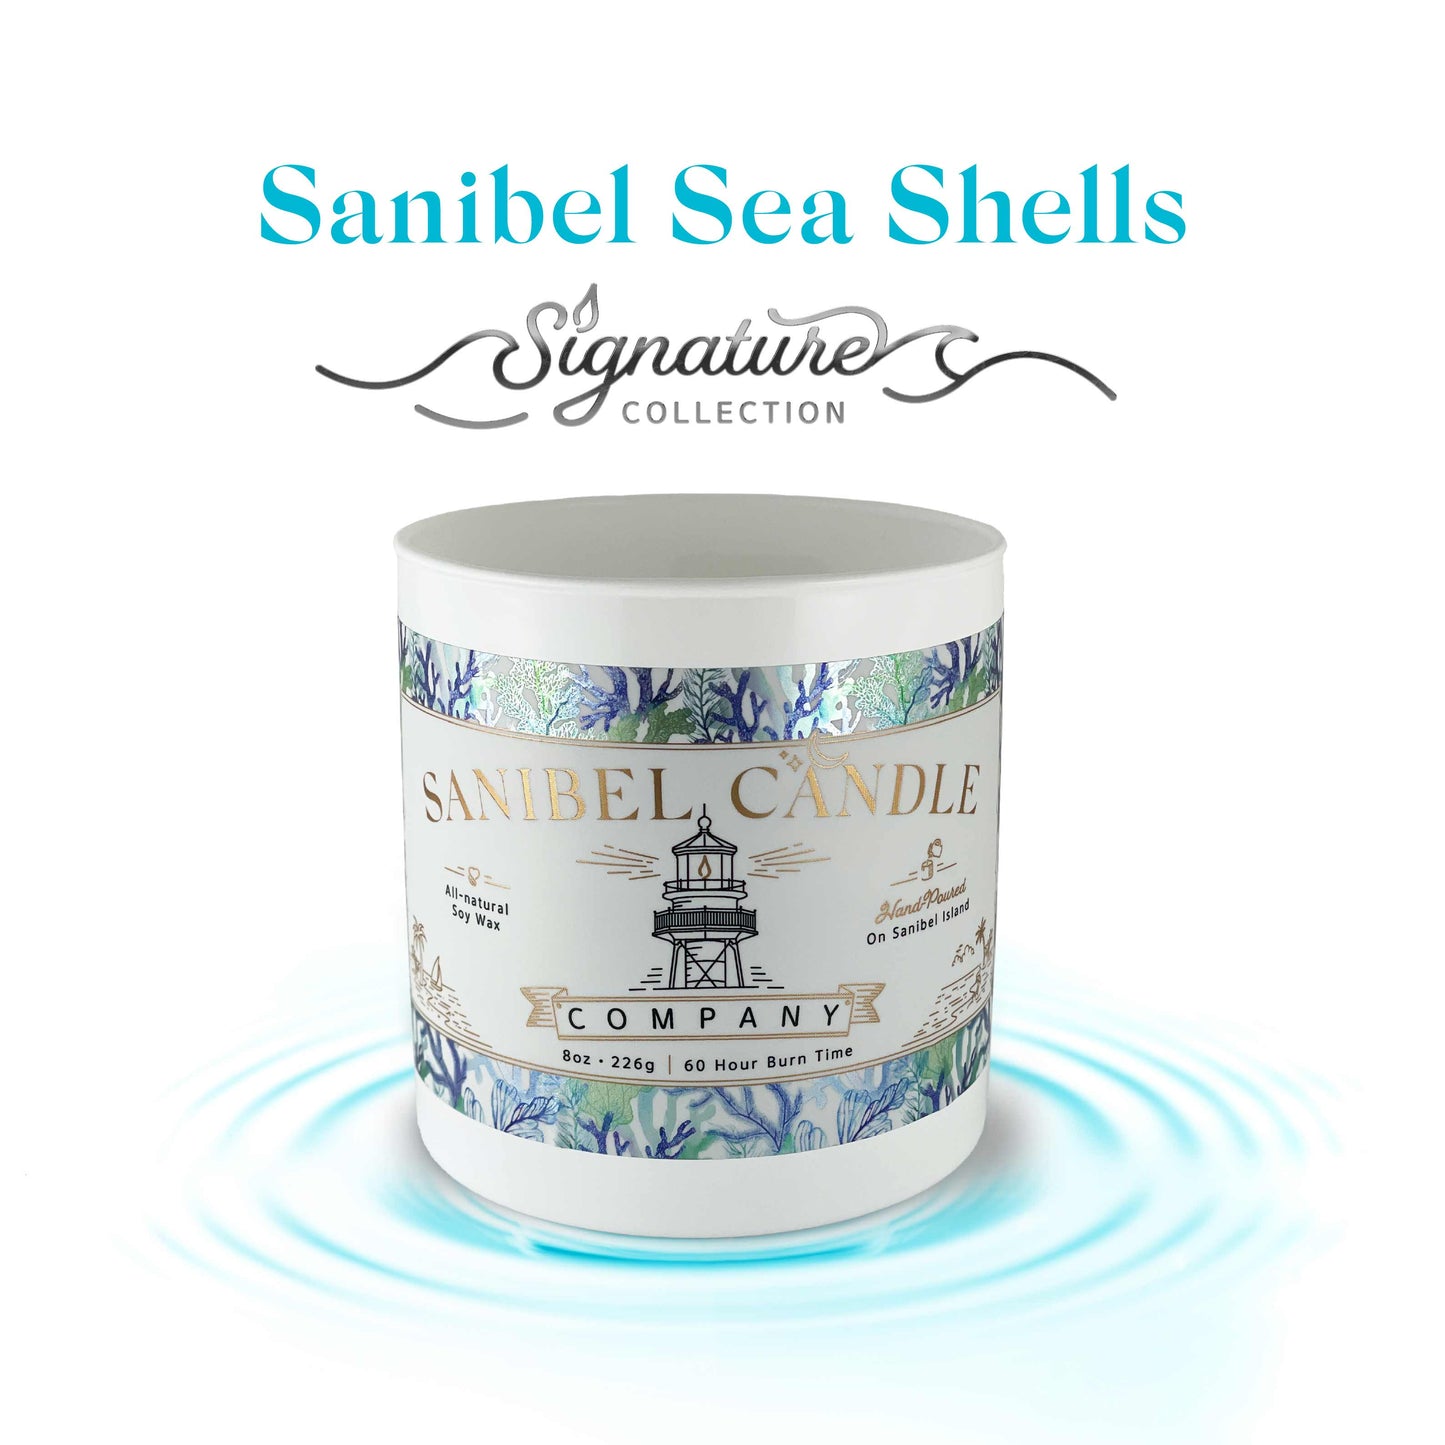 Sanibel Sea Shells - Signature Candle - 8 oz